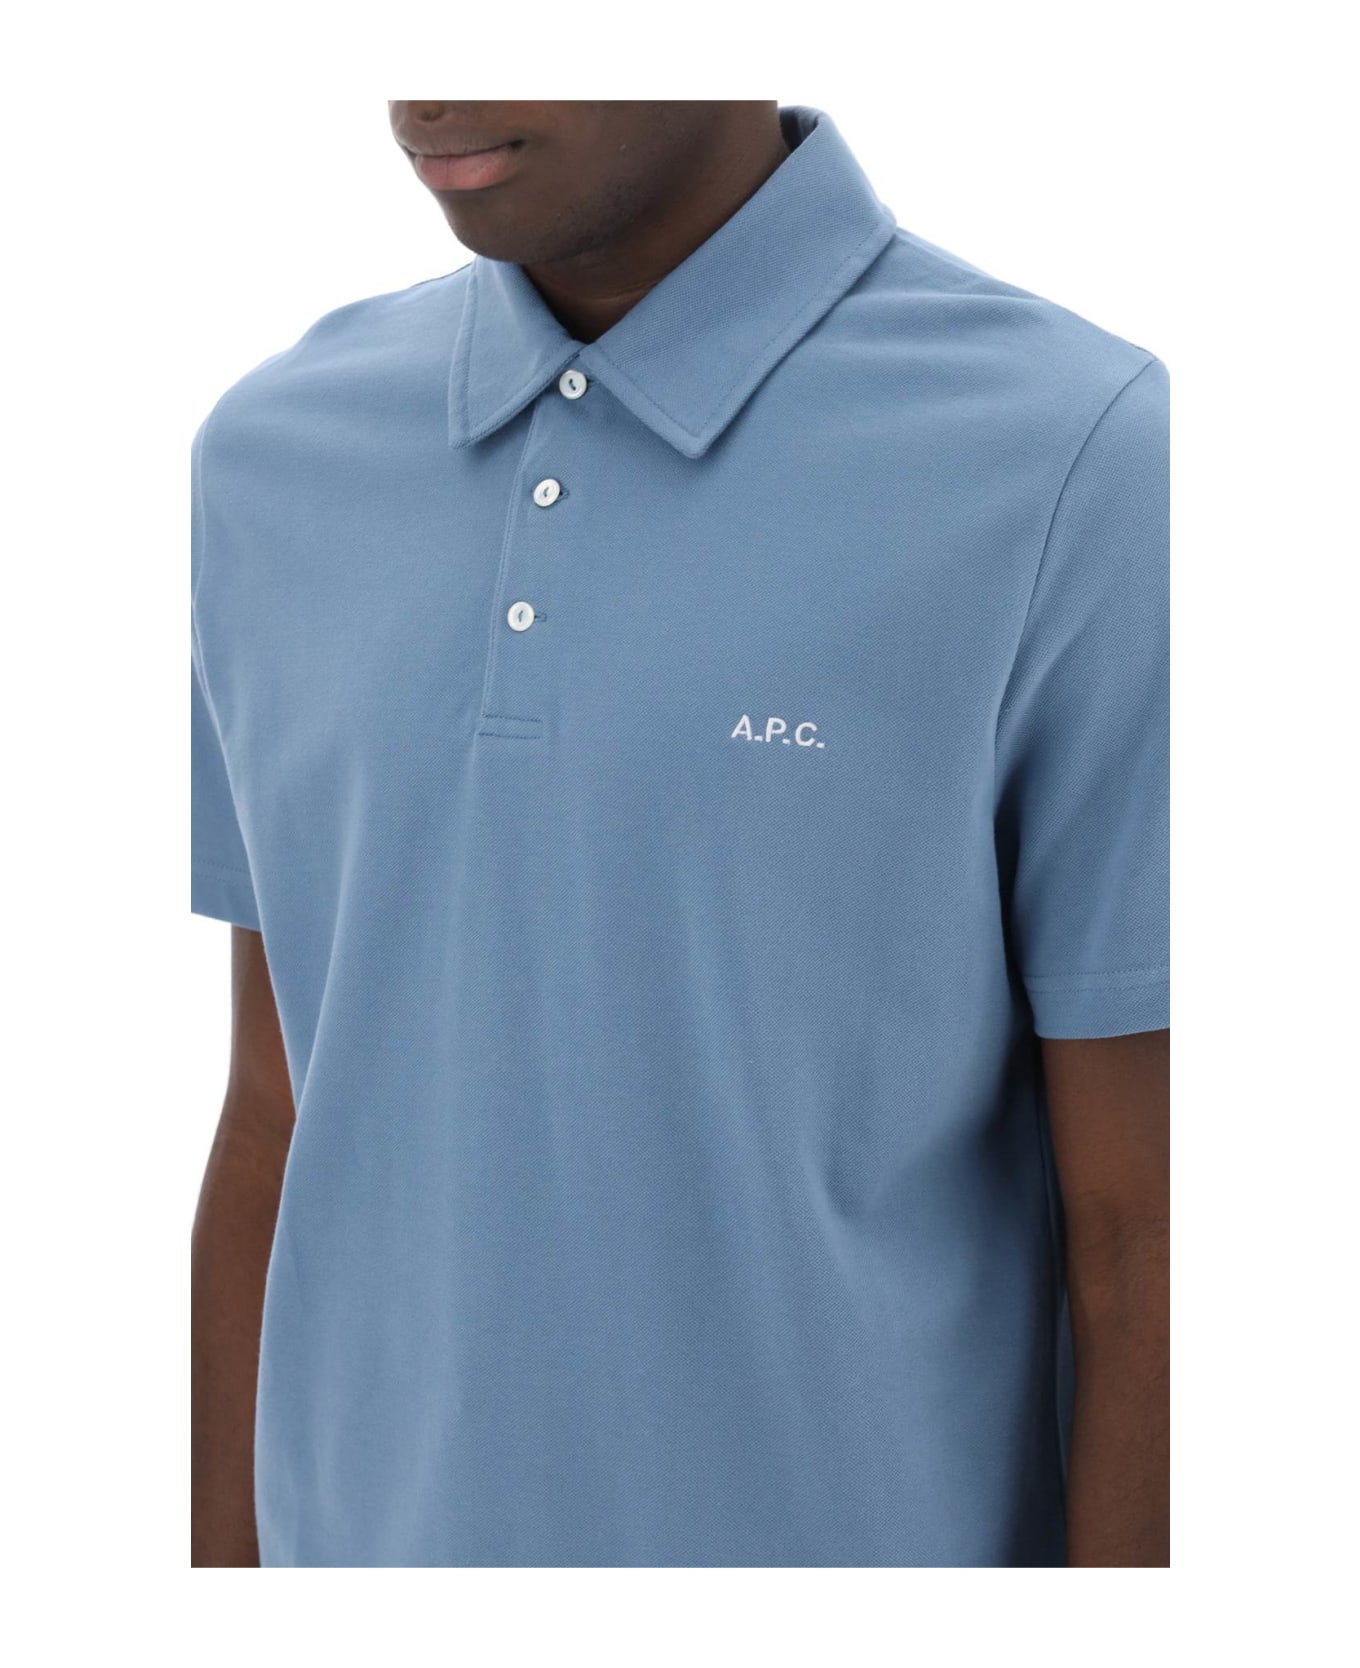 A.P.C. Austin Polo Shirt - BLUE GRIS (Light blue)